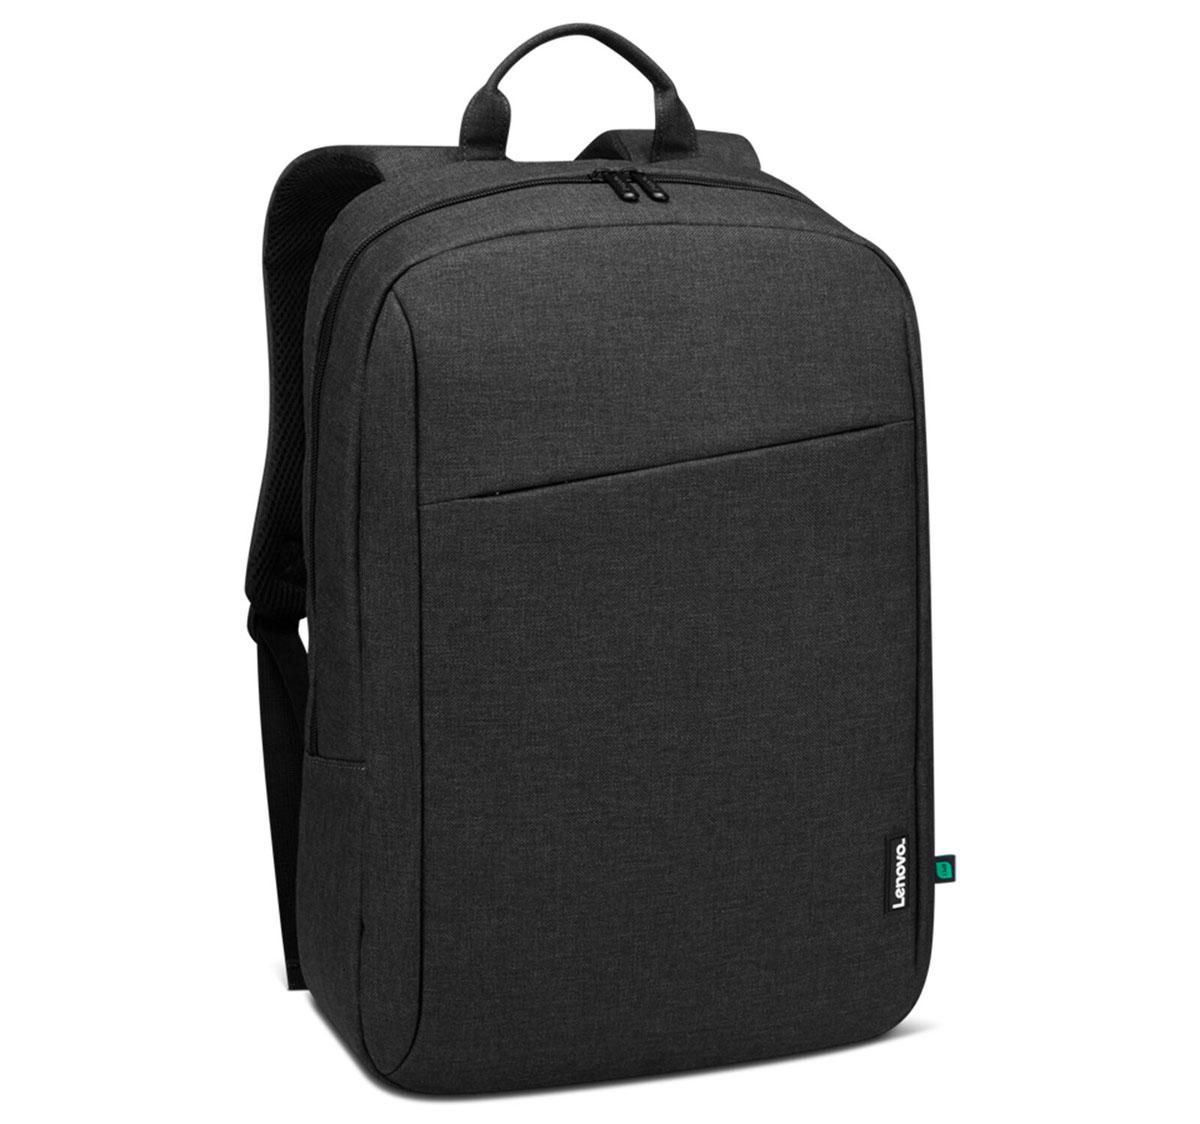 Lenovo 16-inch B210 Black Laptop Backpack for $11.99 Shipped